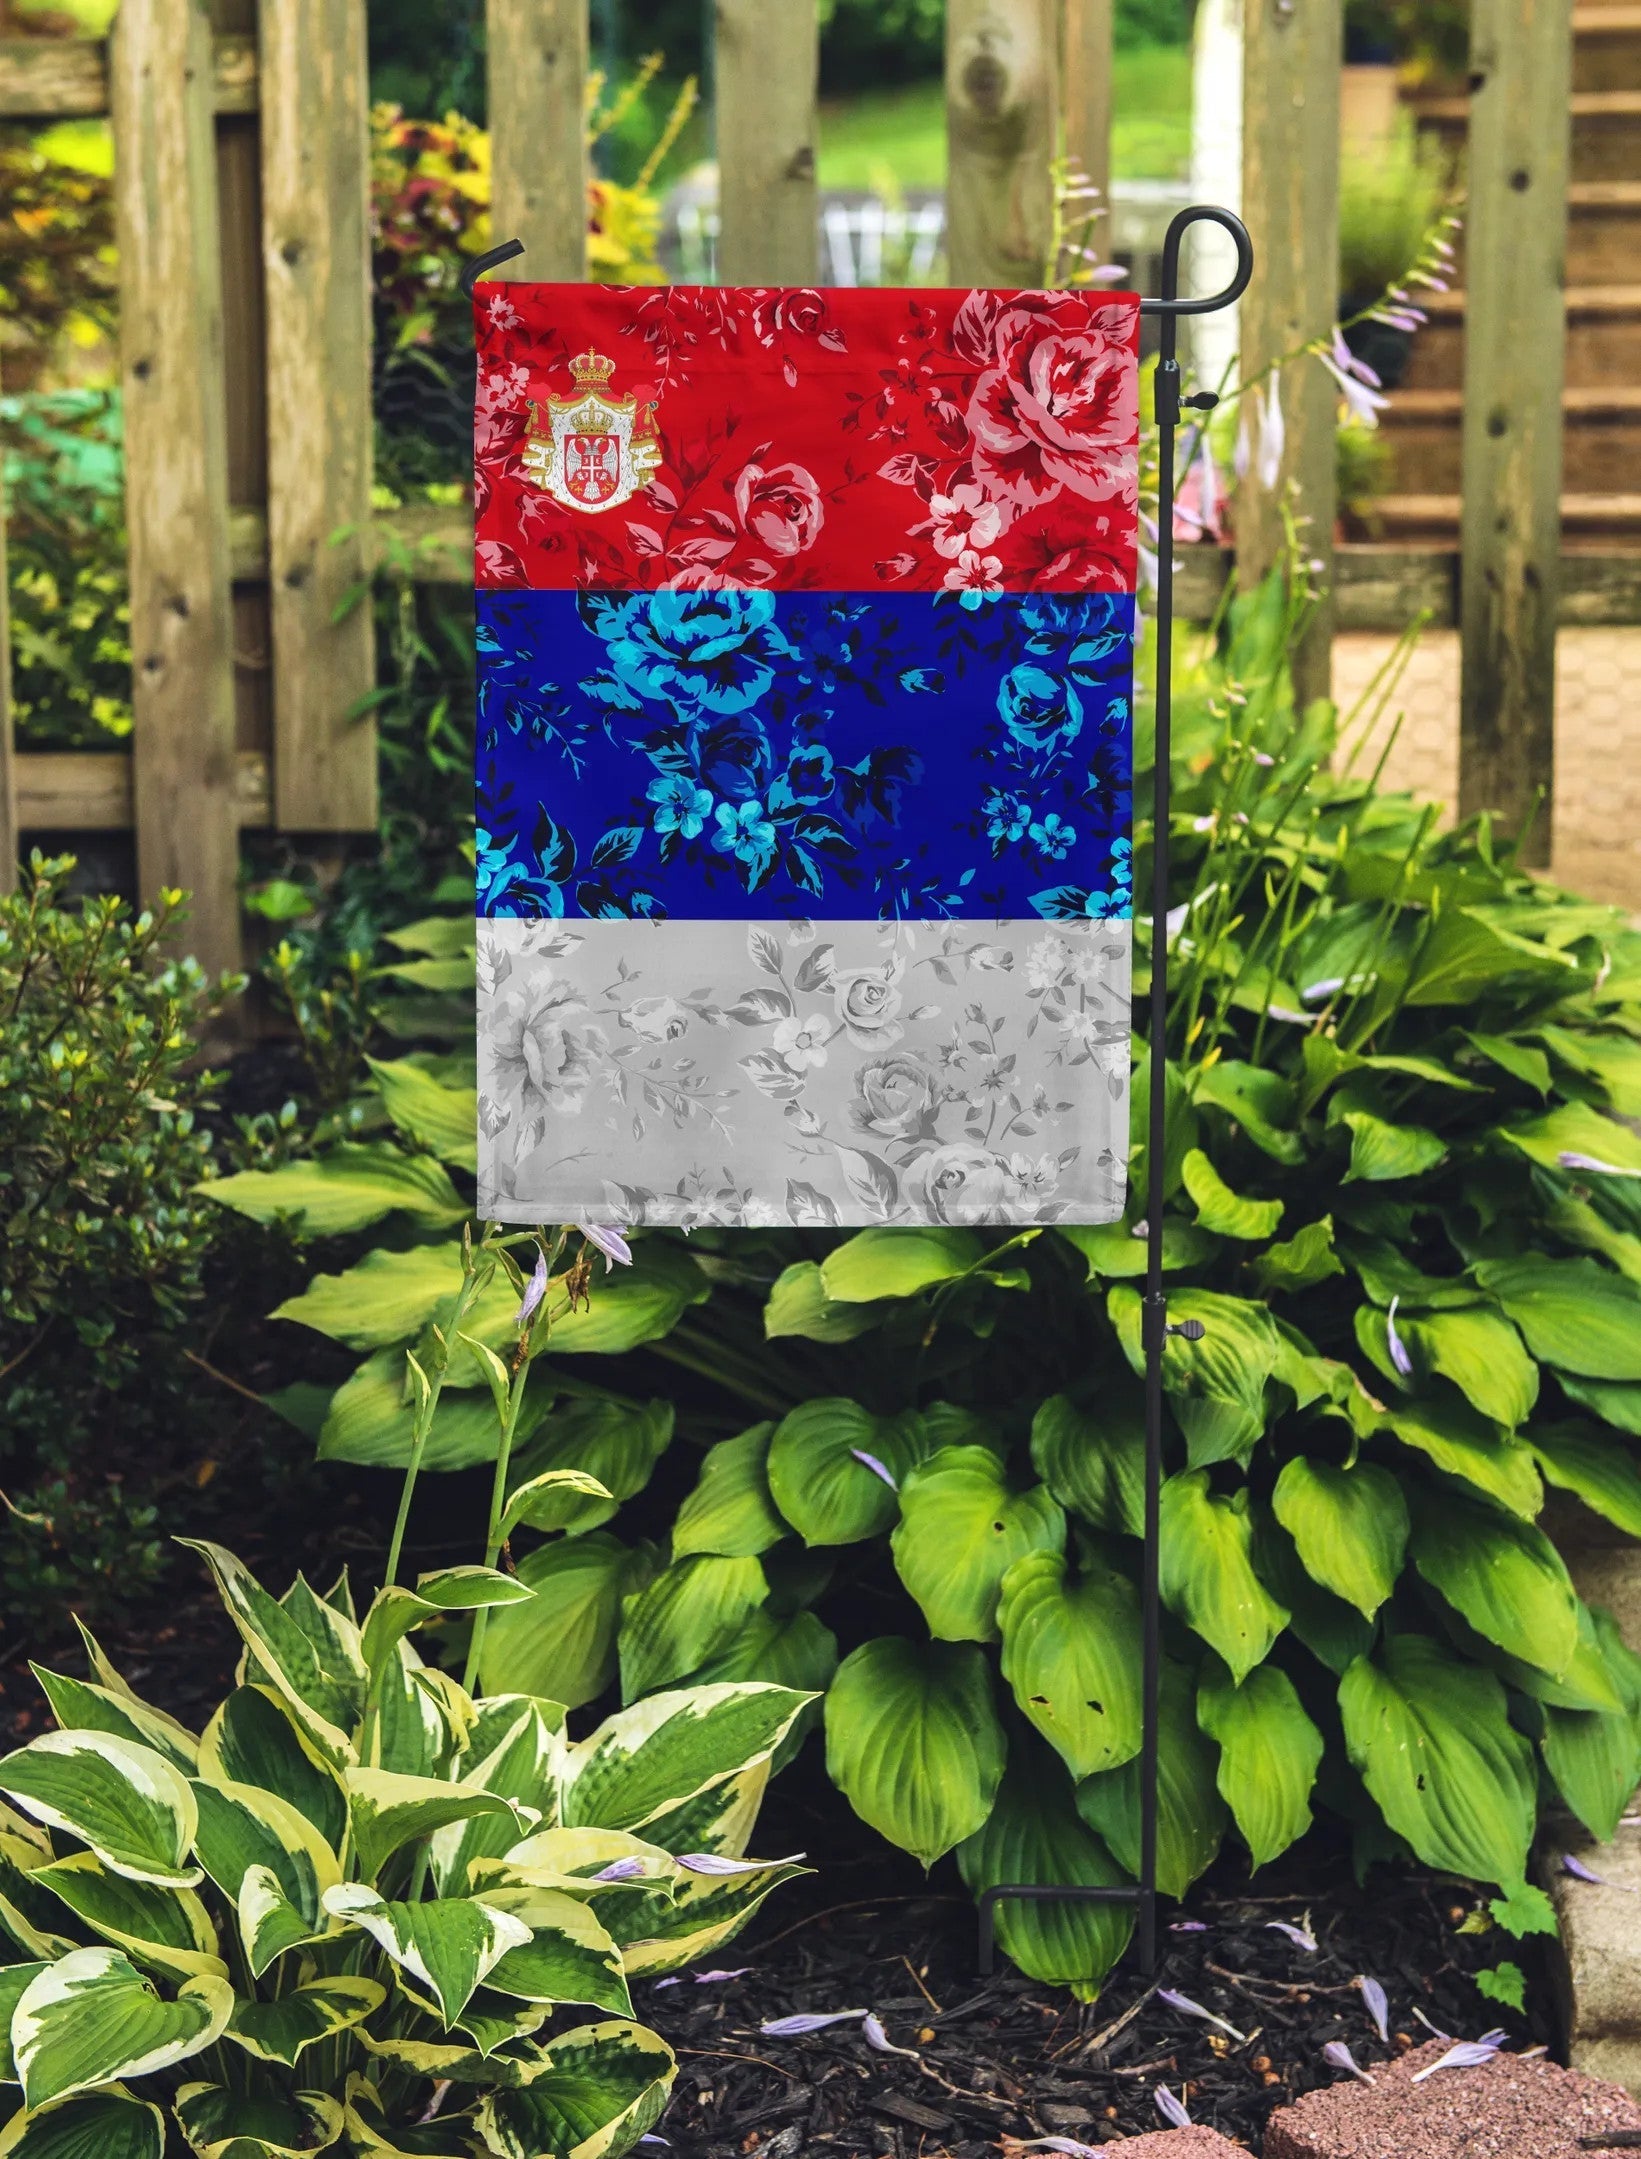 kingdom-of-serbia-garden-flag-flag-flower